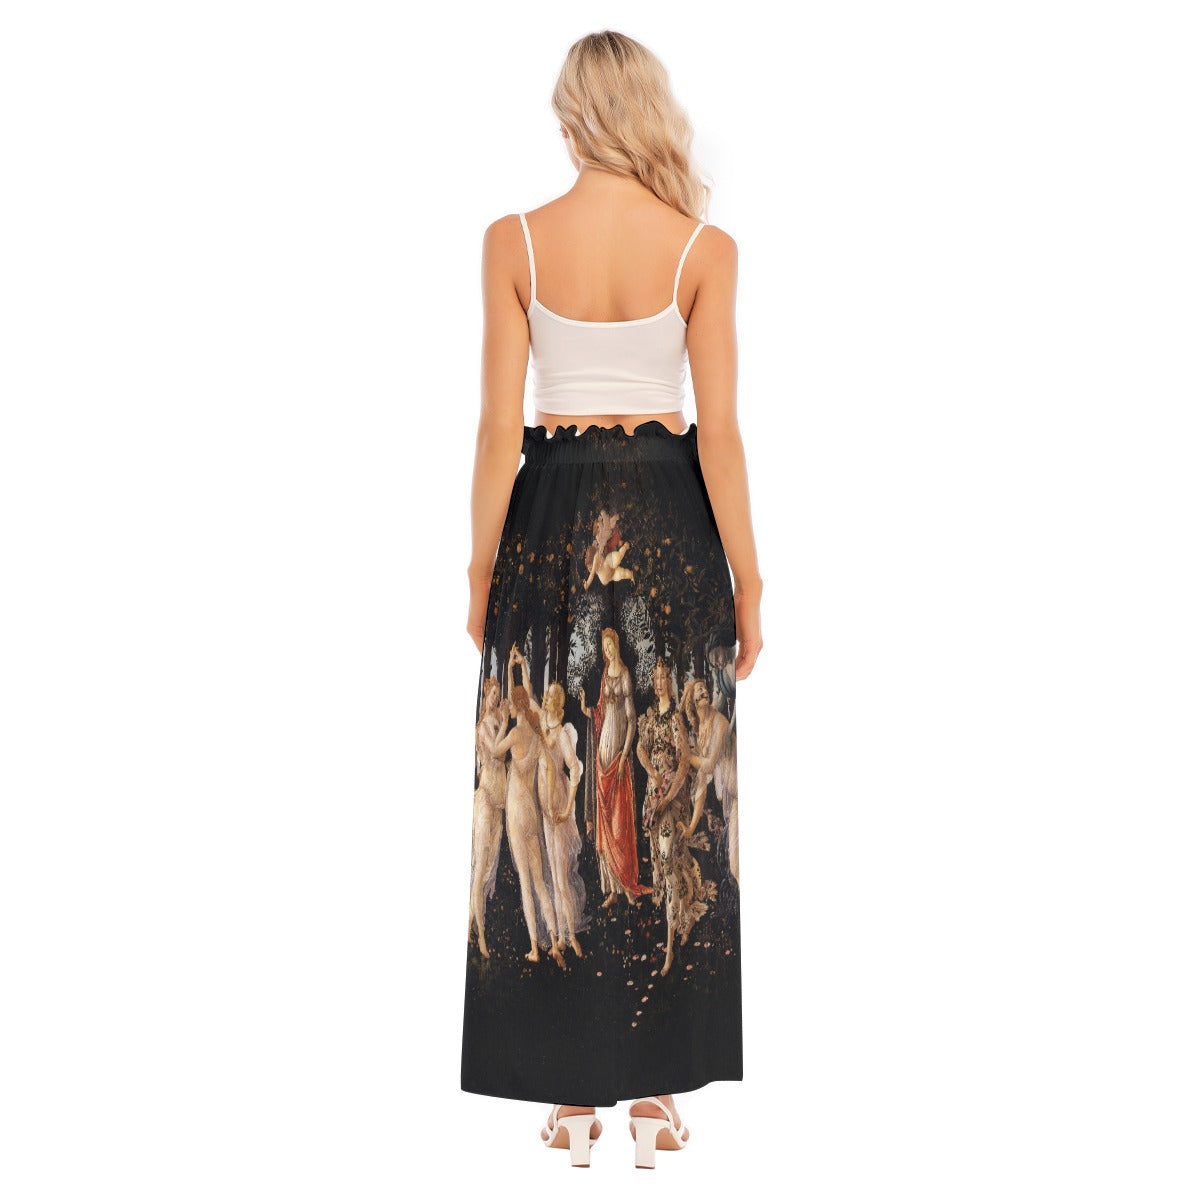 Renaissance-inspired fashion - Side Split Skirt